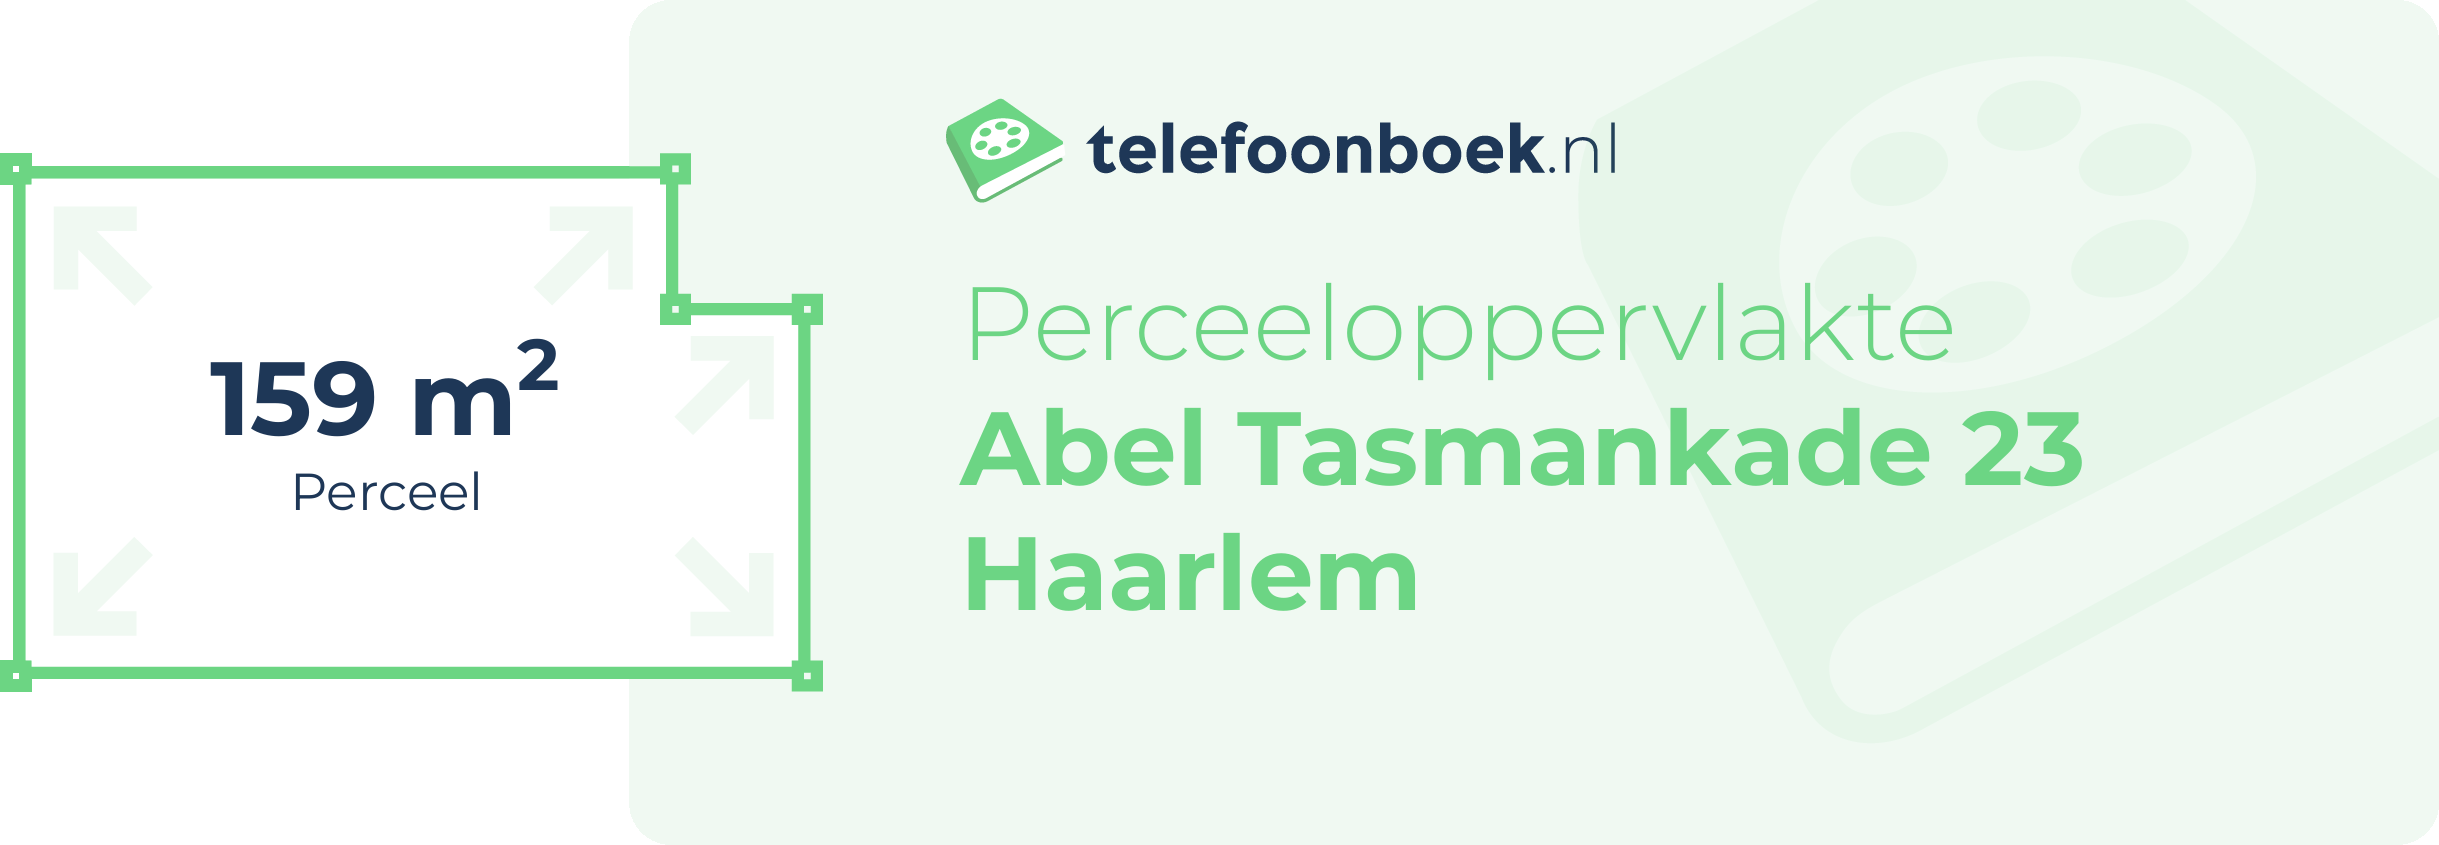 Perceeloppervlakte Abel Tasmankade 23 Haarlem